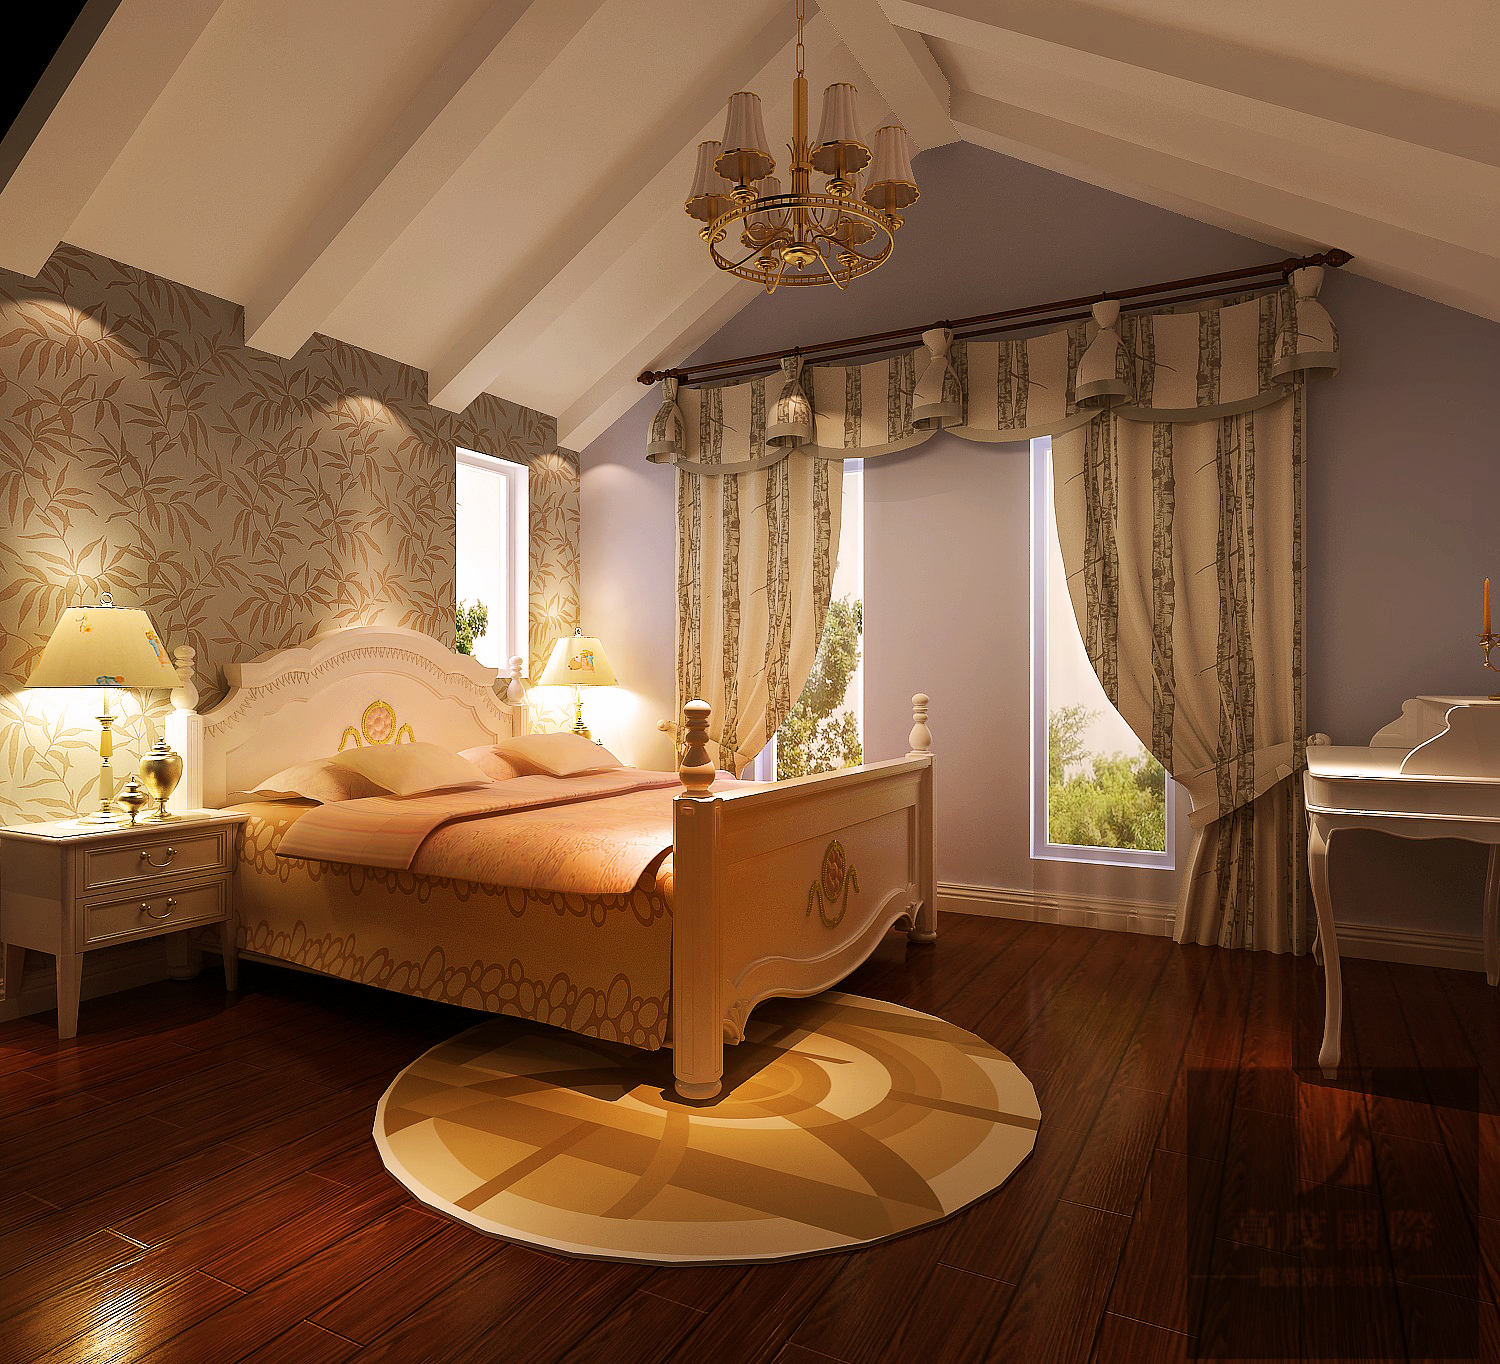 别墅 托斯卡纳 地中海 卧室图片来自高度国际装饰韩冰在天竺新新家园400平米托斯卡纳的分享